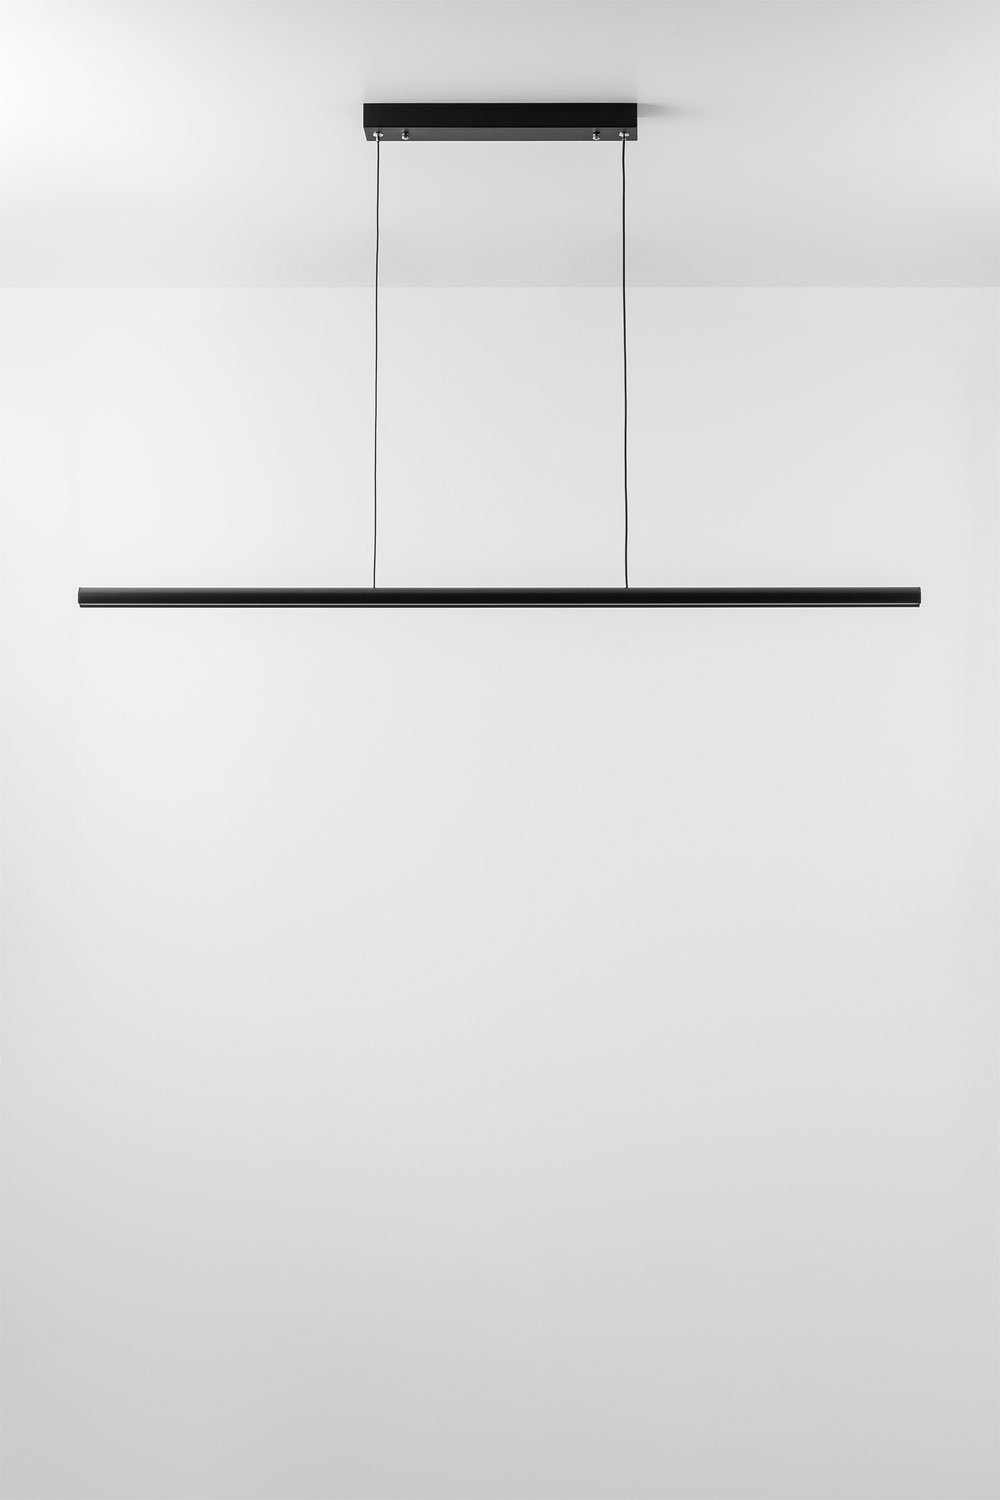 Wilen aluminium LED lineaire plafondlamp, galerij beeld 1